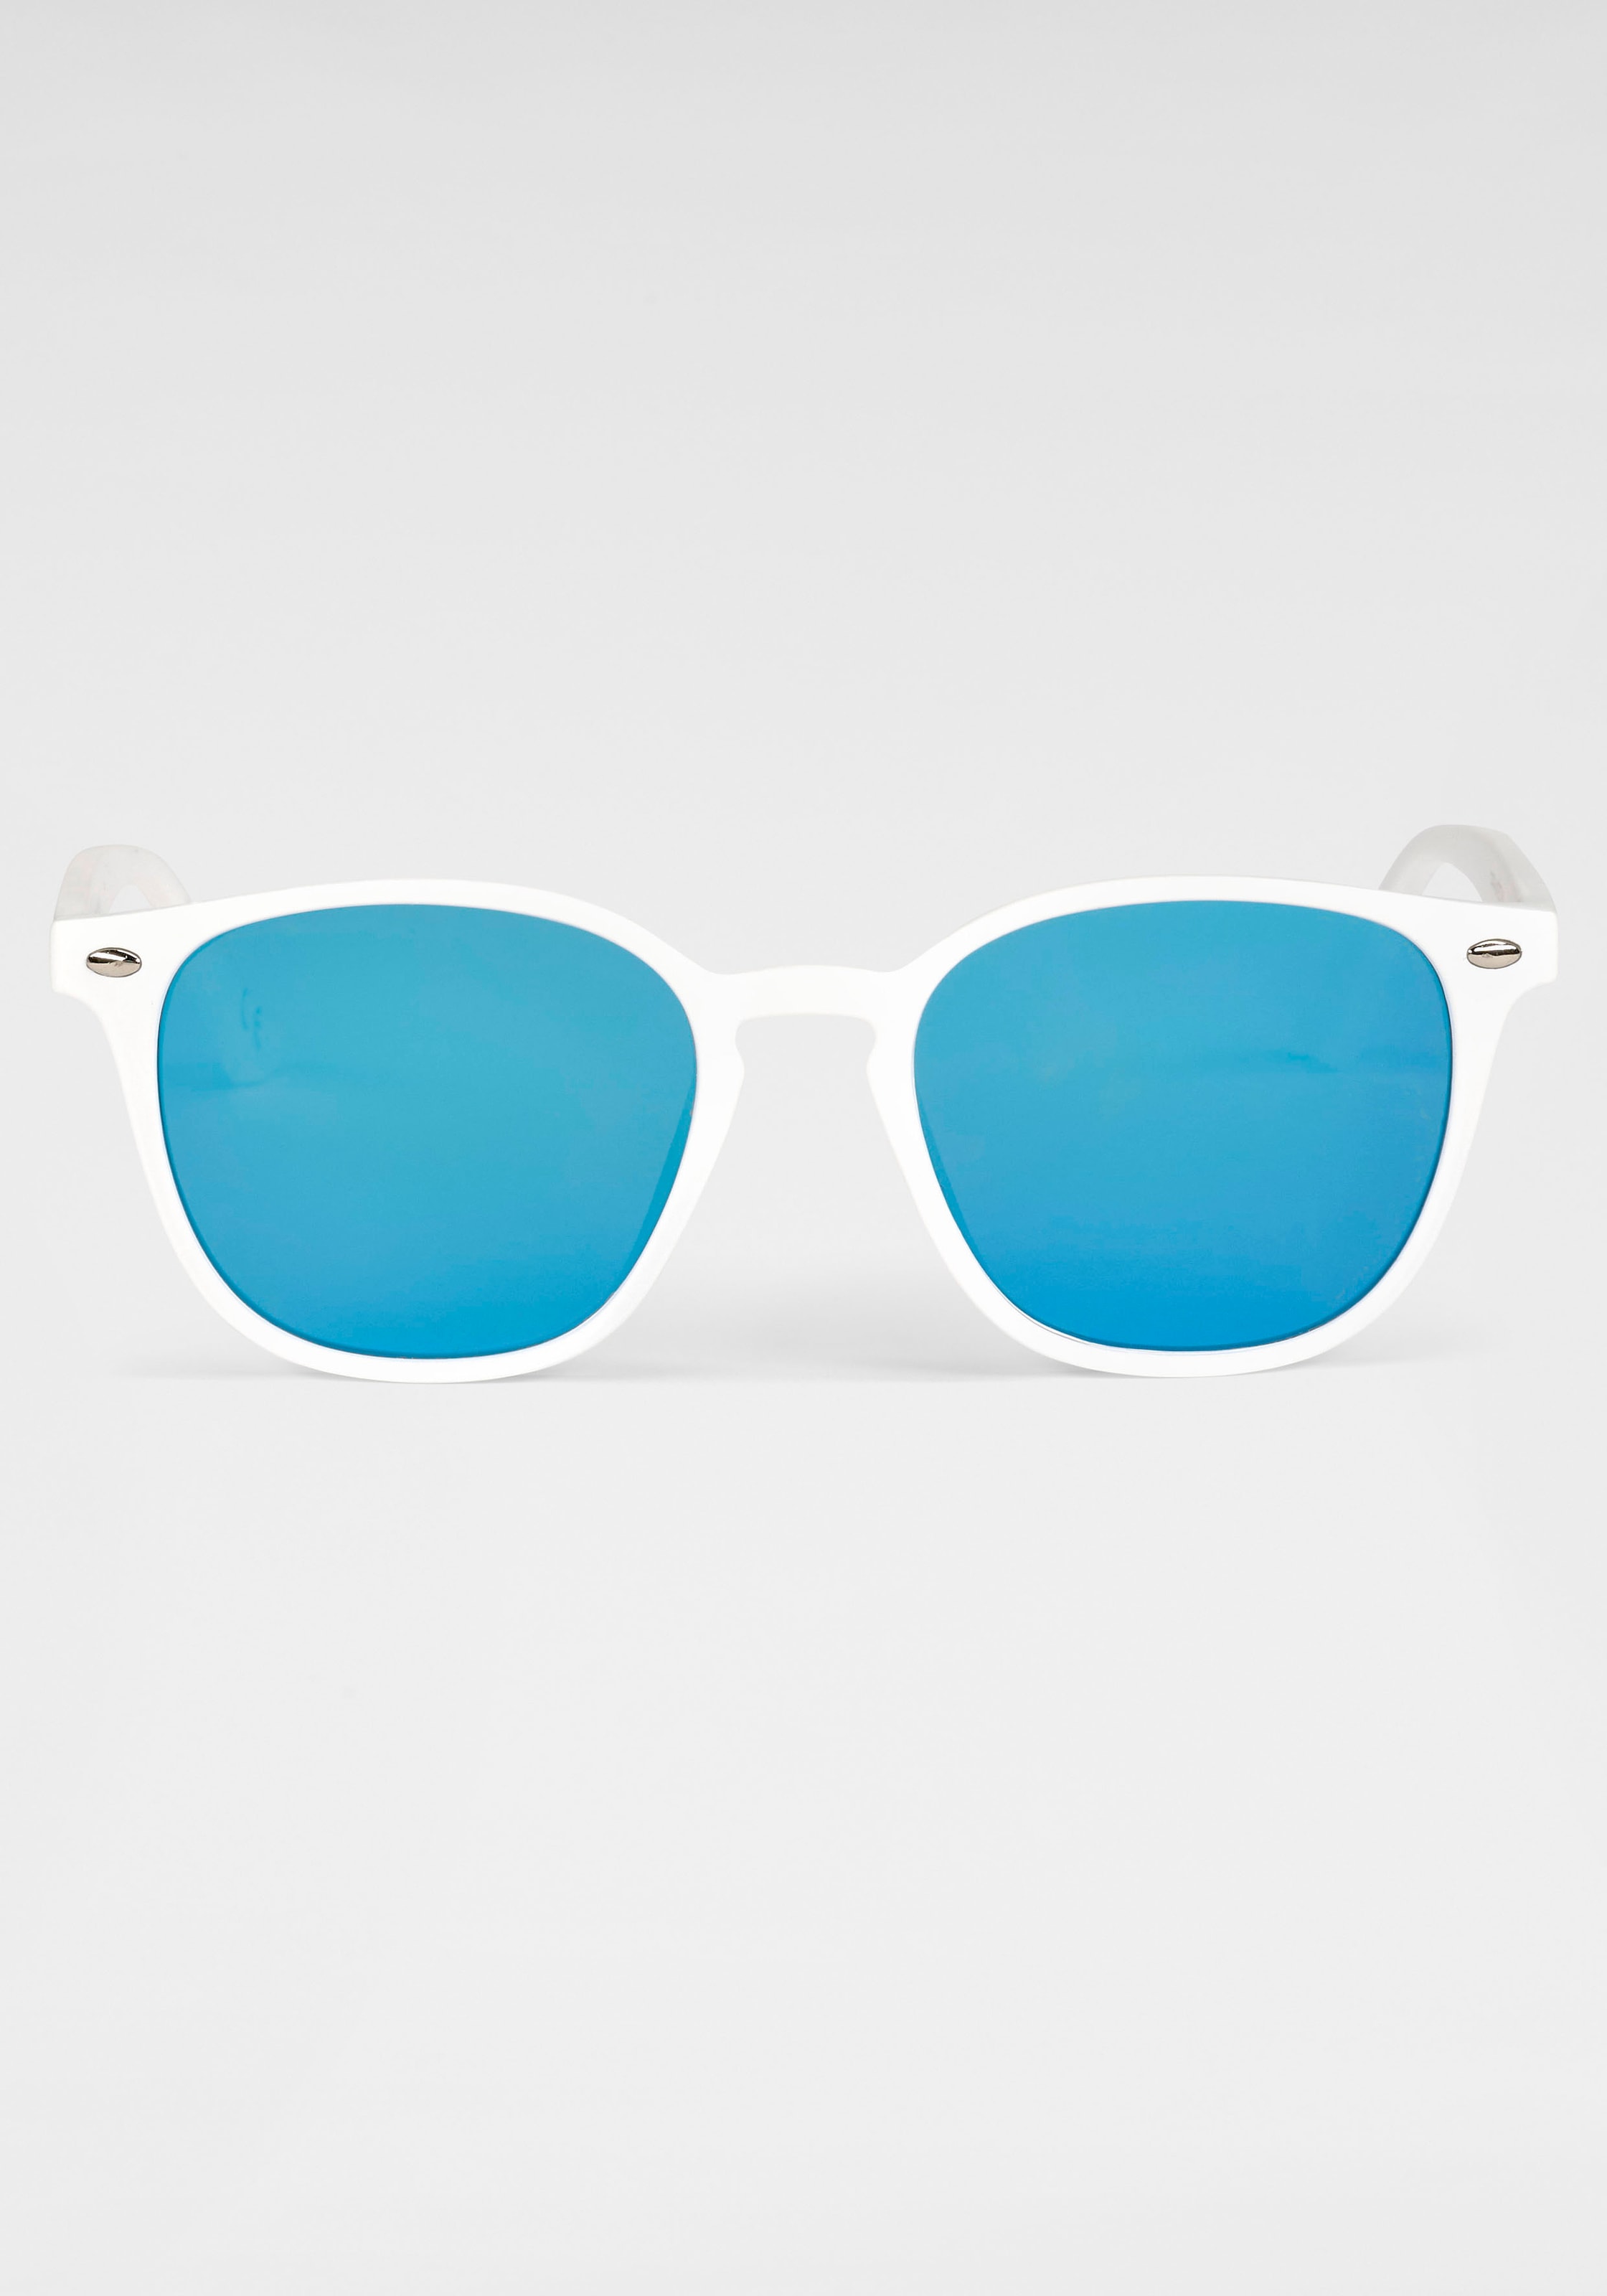 Sonnenbrille, Weiße Sonnenbrille mit blau verspiegelten Gläsern